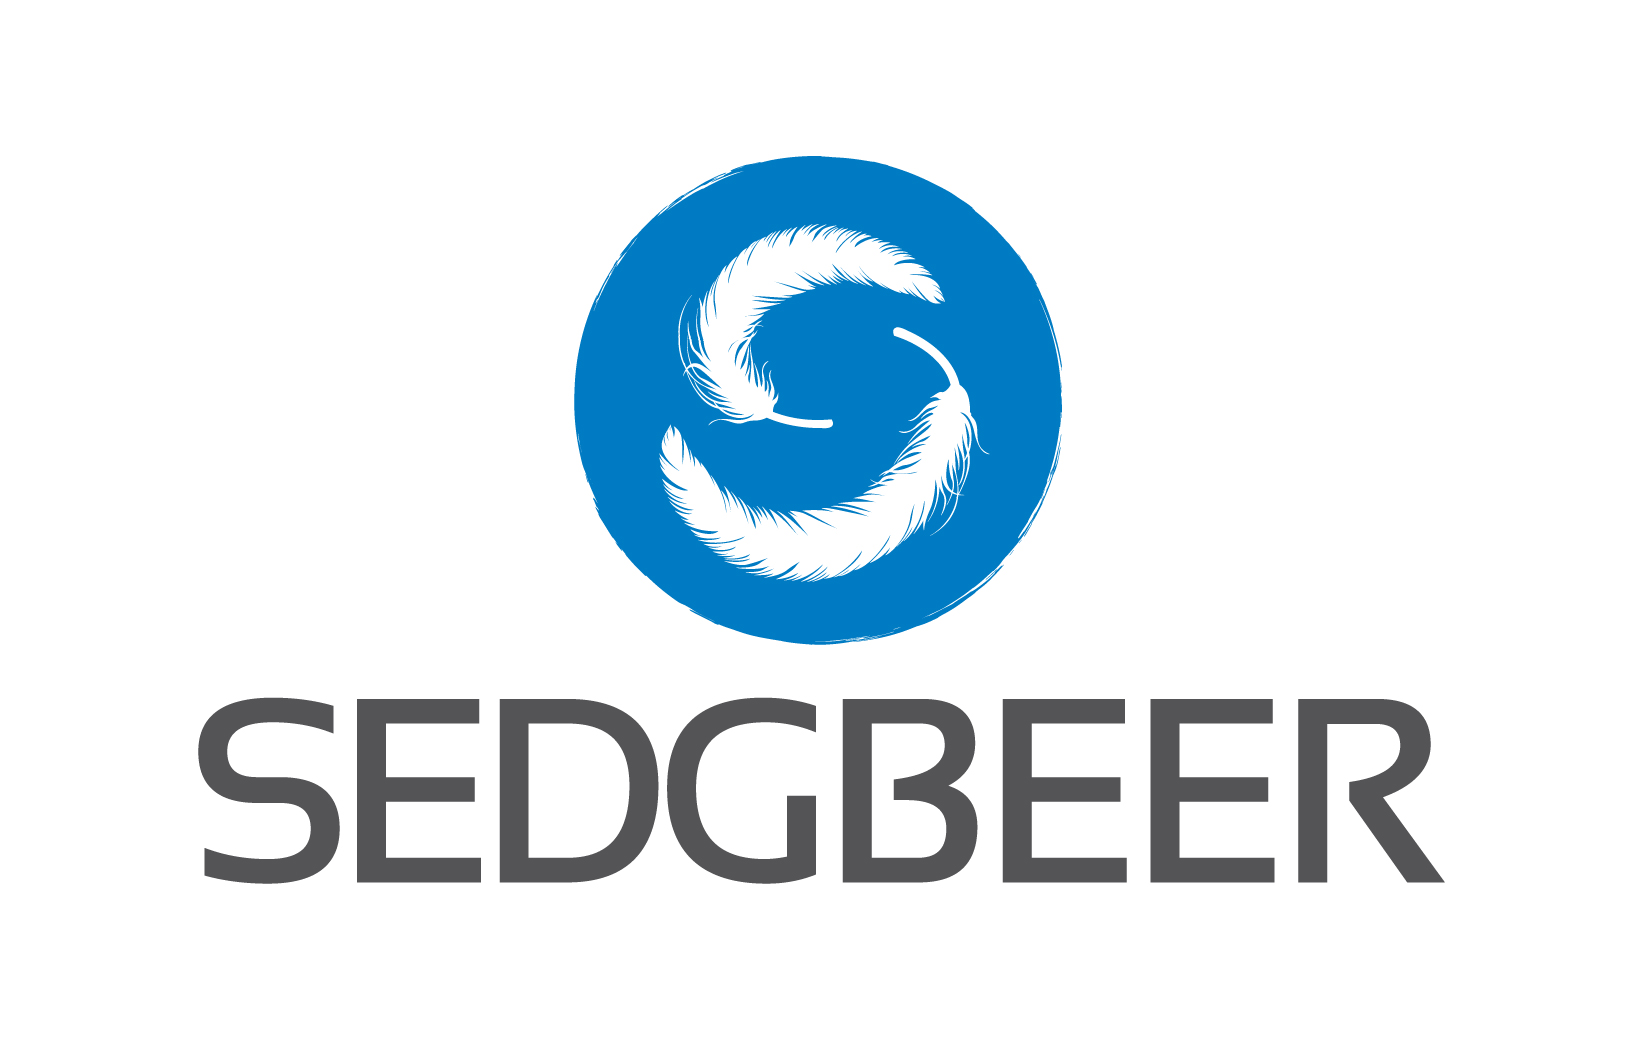 Sedgbeer Processing Supplies